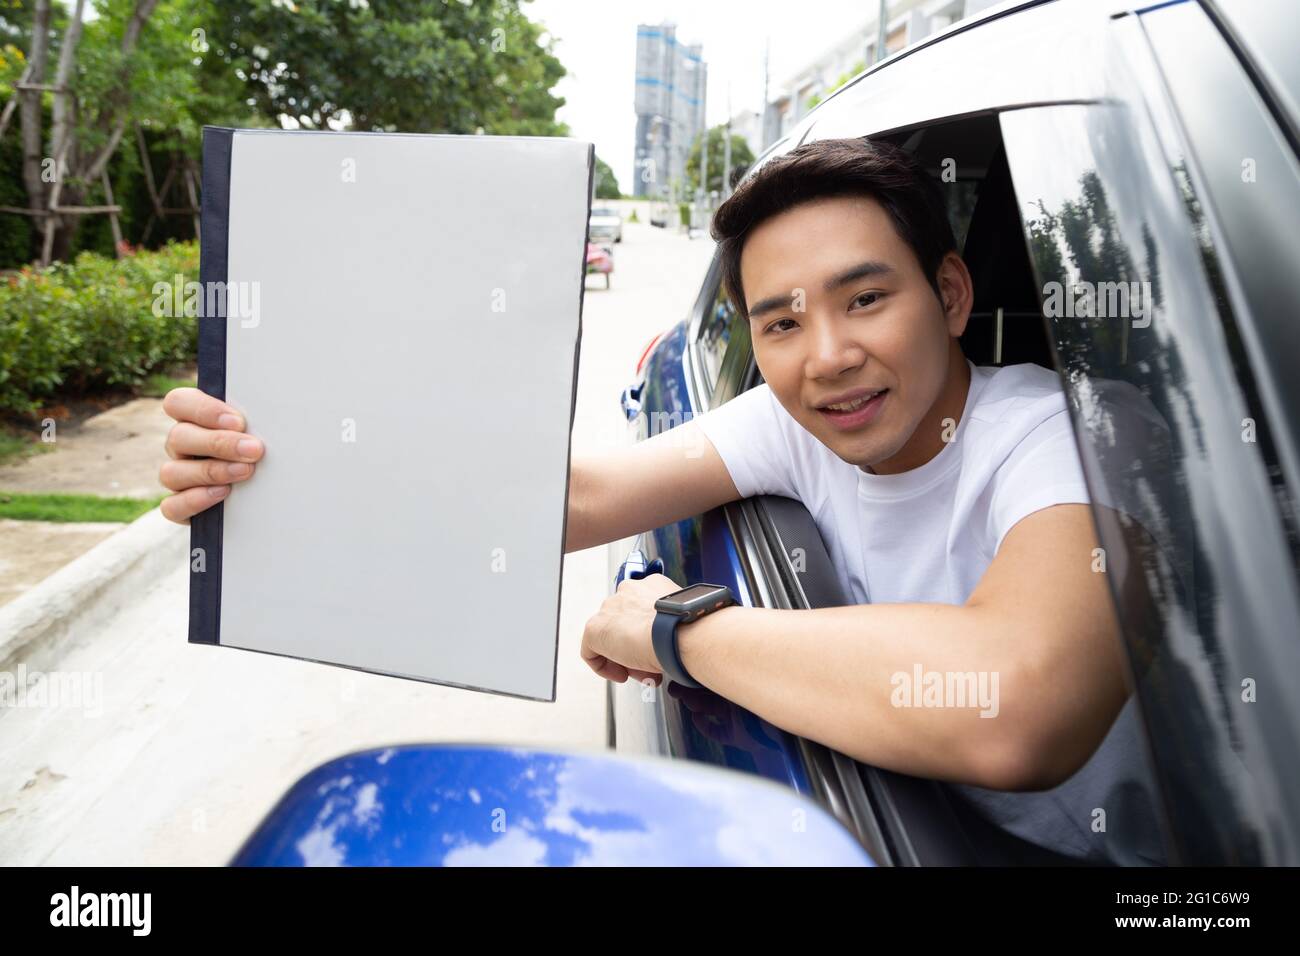 Hombre asiático joven que sostiene el libro de la póliza del coche y que se sienta en el coche, concepto del seguro personal del accidente Foto de stock